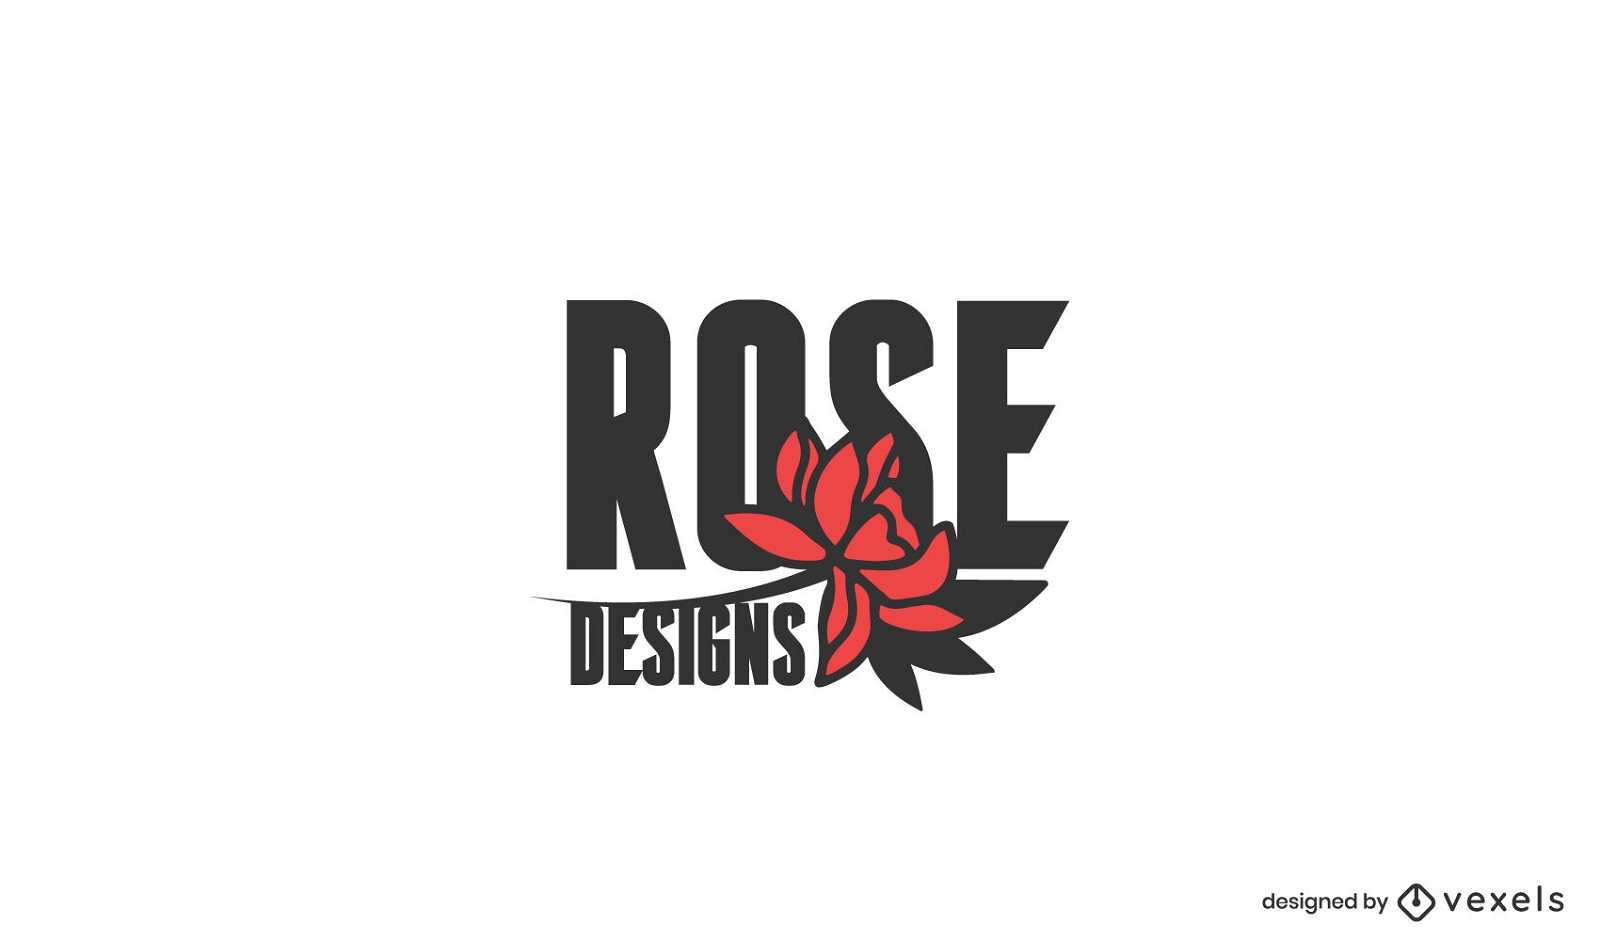 Rose designs logo design